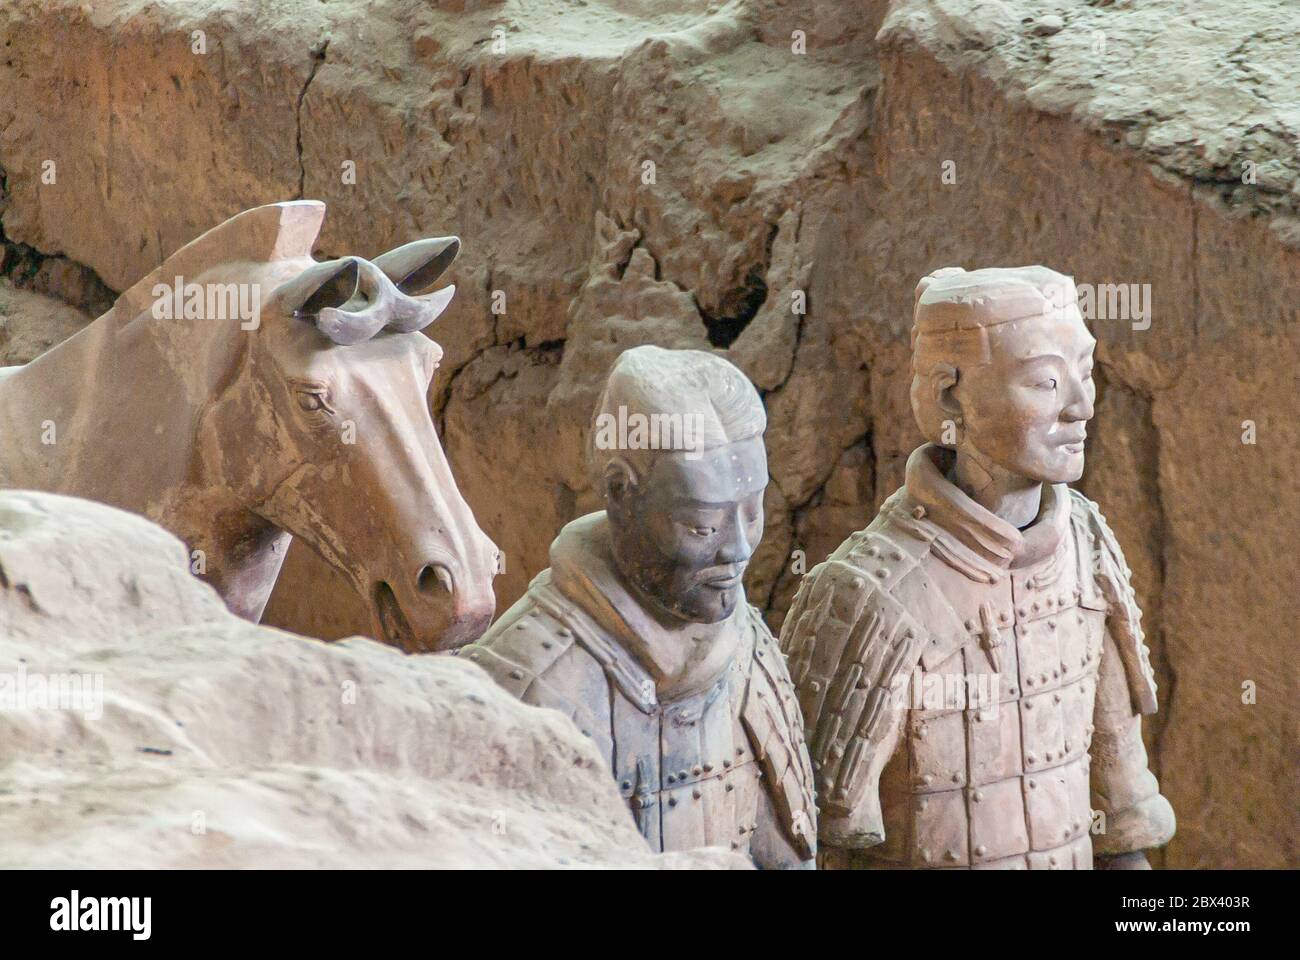 Xian, Cina - 1 maggio 2010: Sito di scavo dell'Esercito di terracotta. Cassettiera di 2 statue di soldati grigio-beige in piedi con cavallo in trincea. Foto Stock